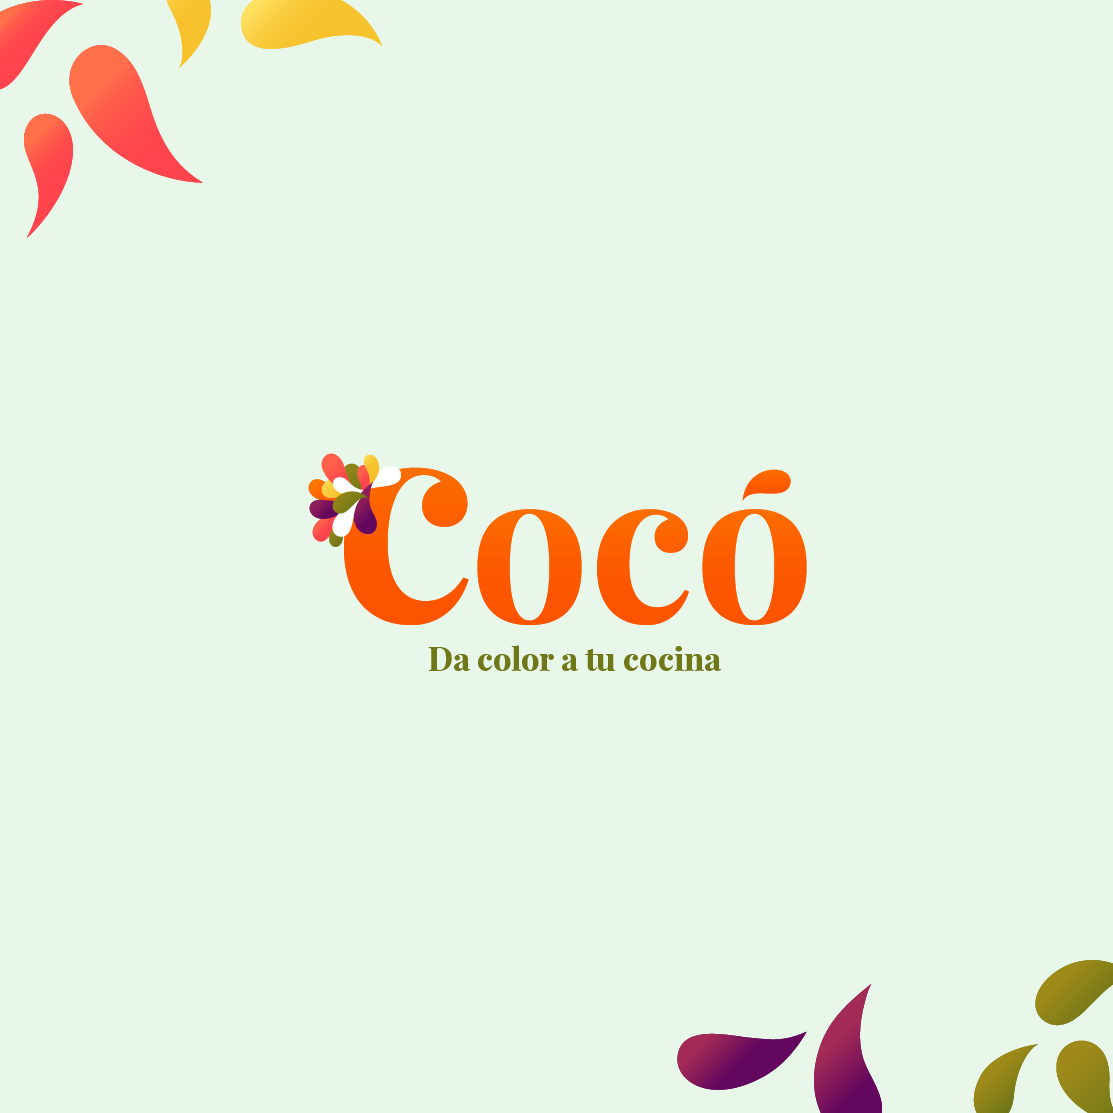 En este momento estás viendo Identidad visual de Cocó, dá color a tu cocina